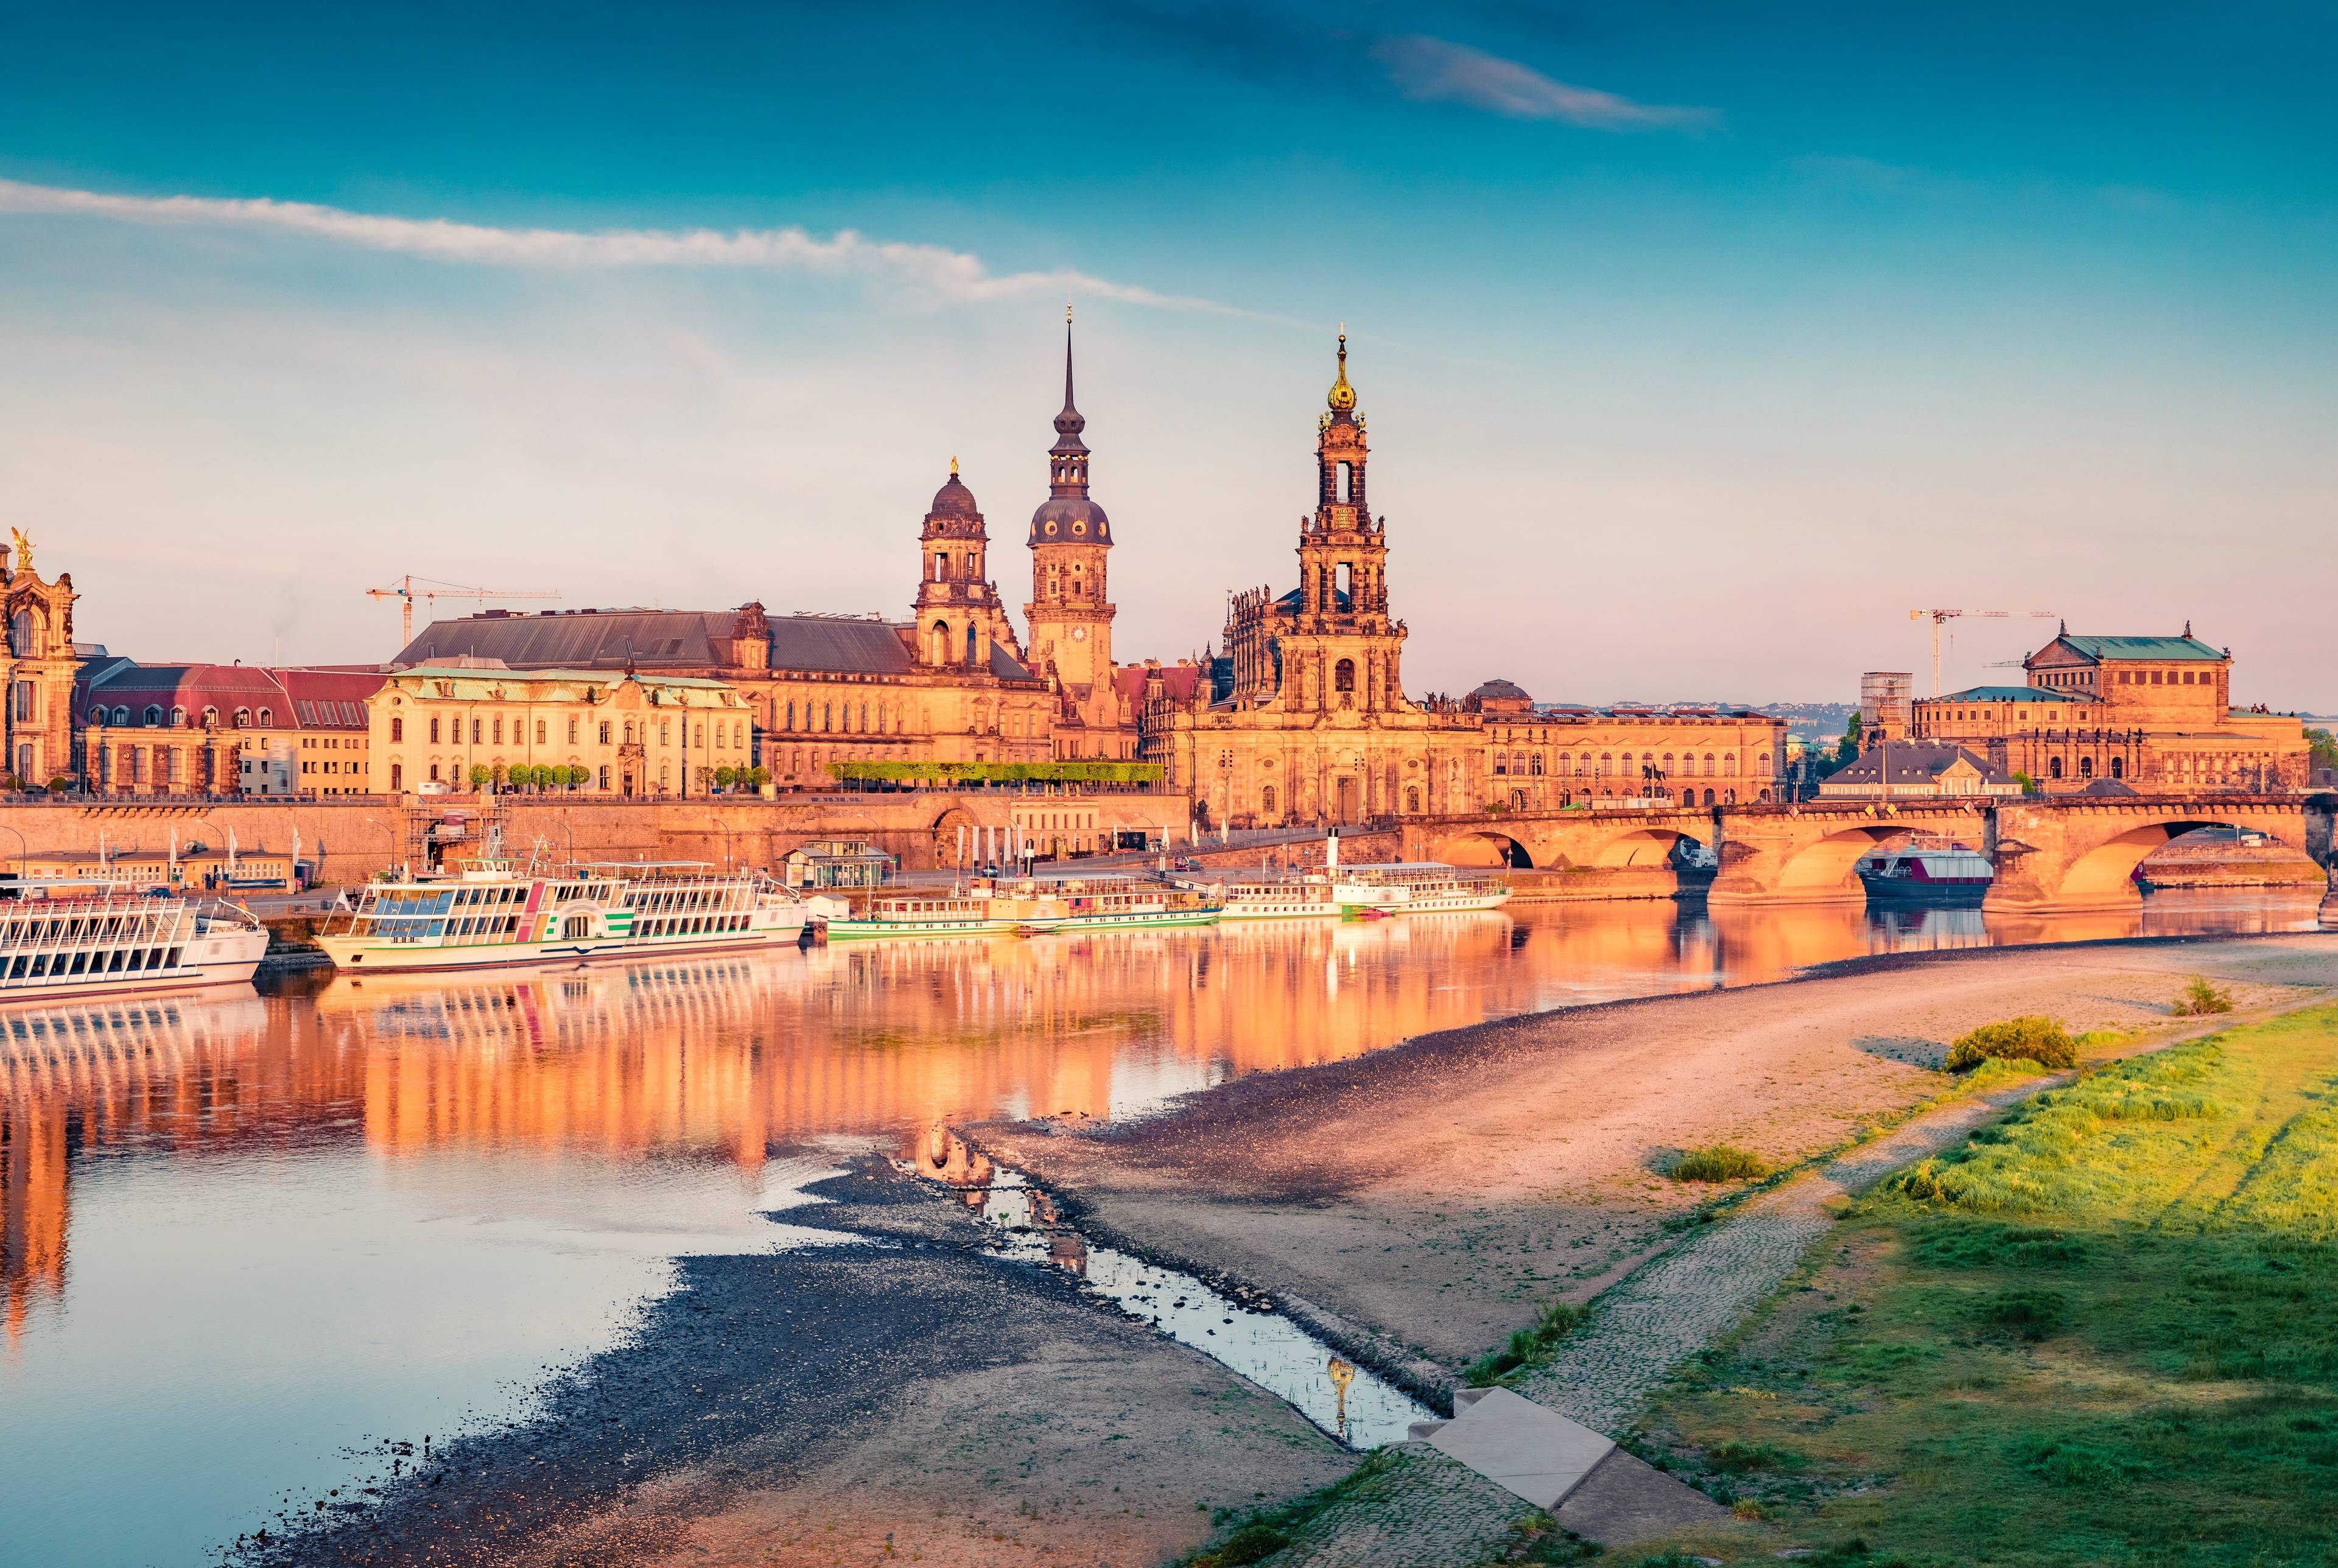 Route des merveilles architecturales et paysagères entre l'Allemagne et la Pologne